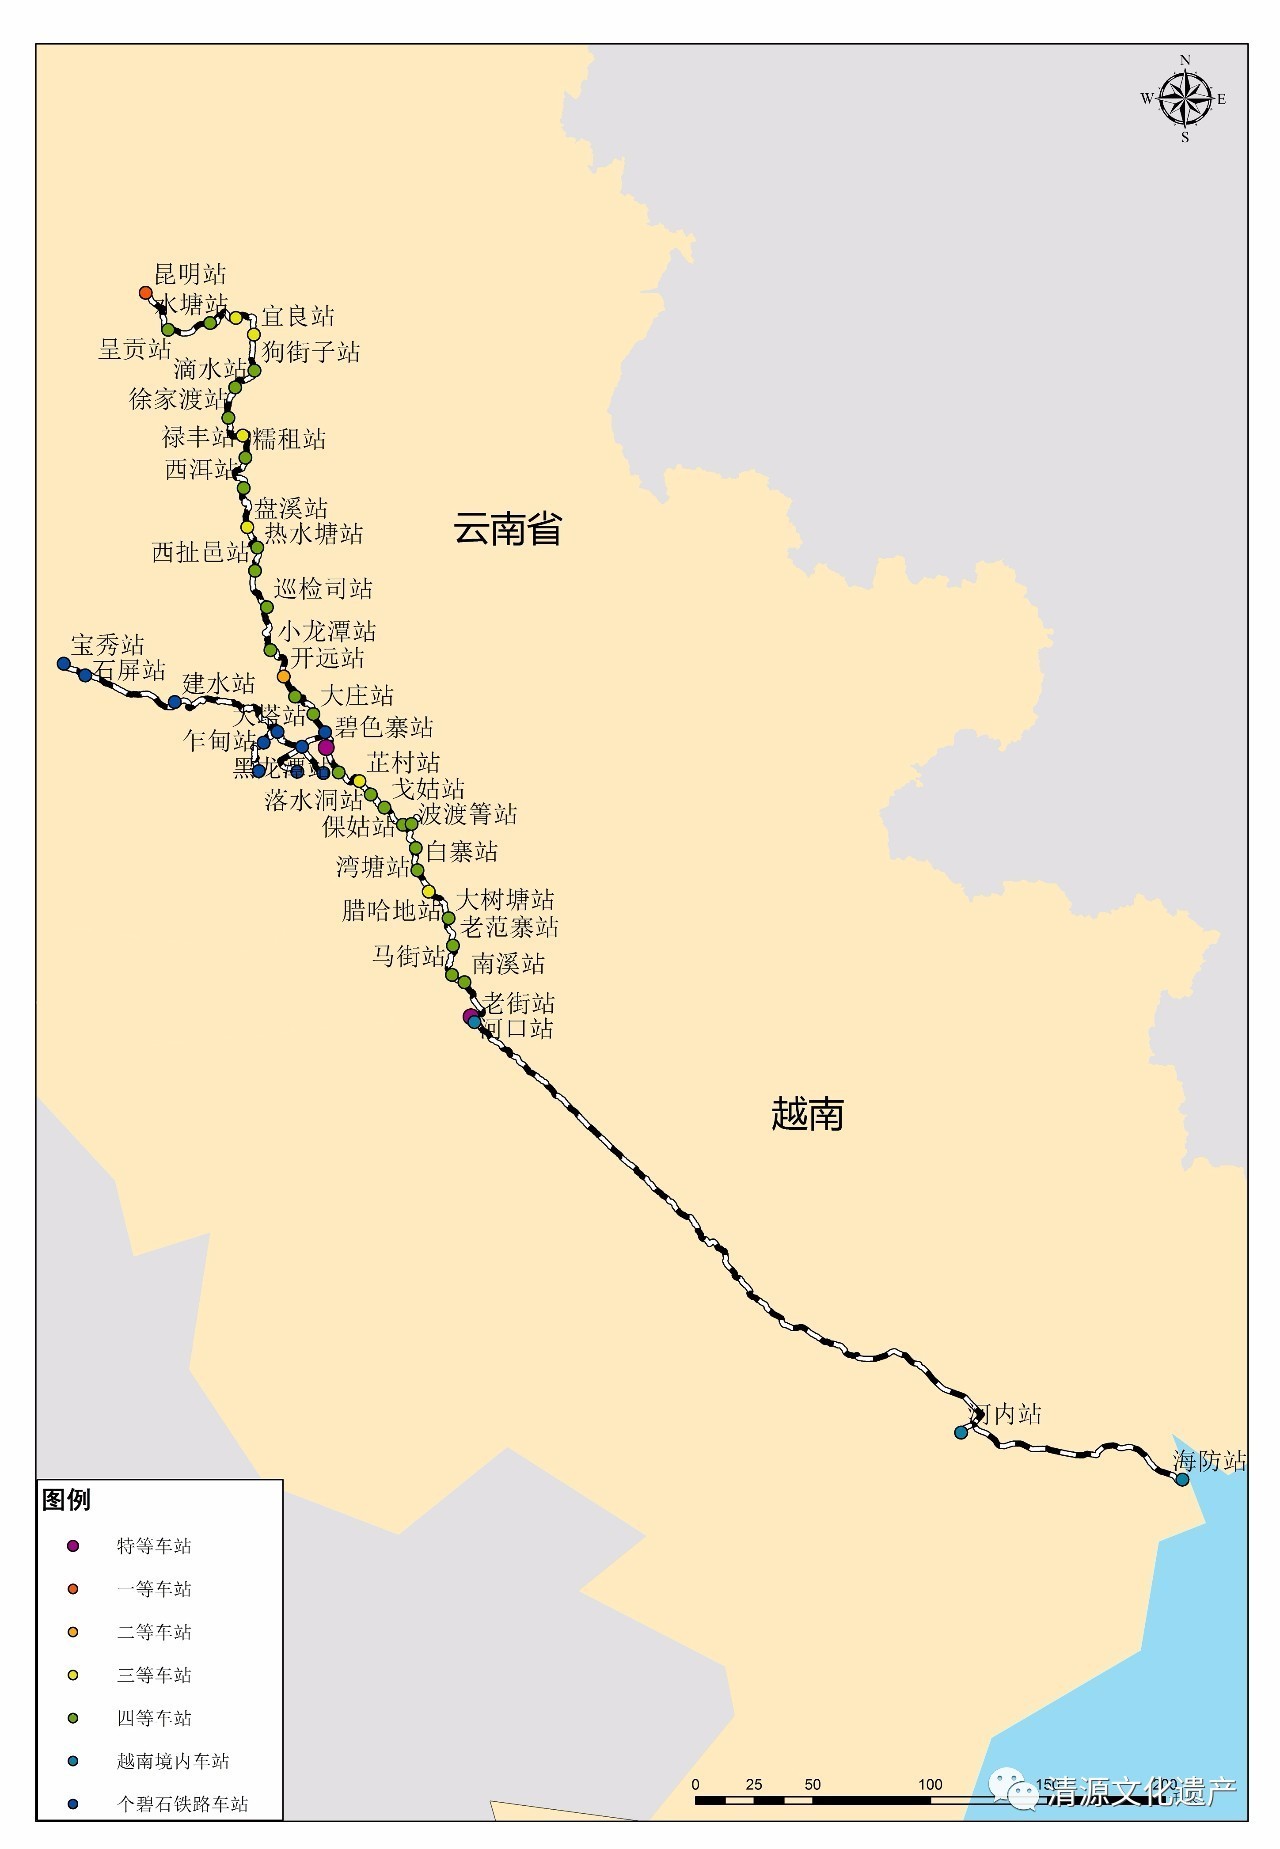 为米轨铁路,由云南府(昆明)经当时的通商口岸碧色寨,到达河口与越南图片